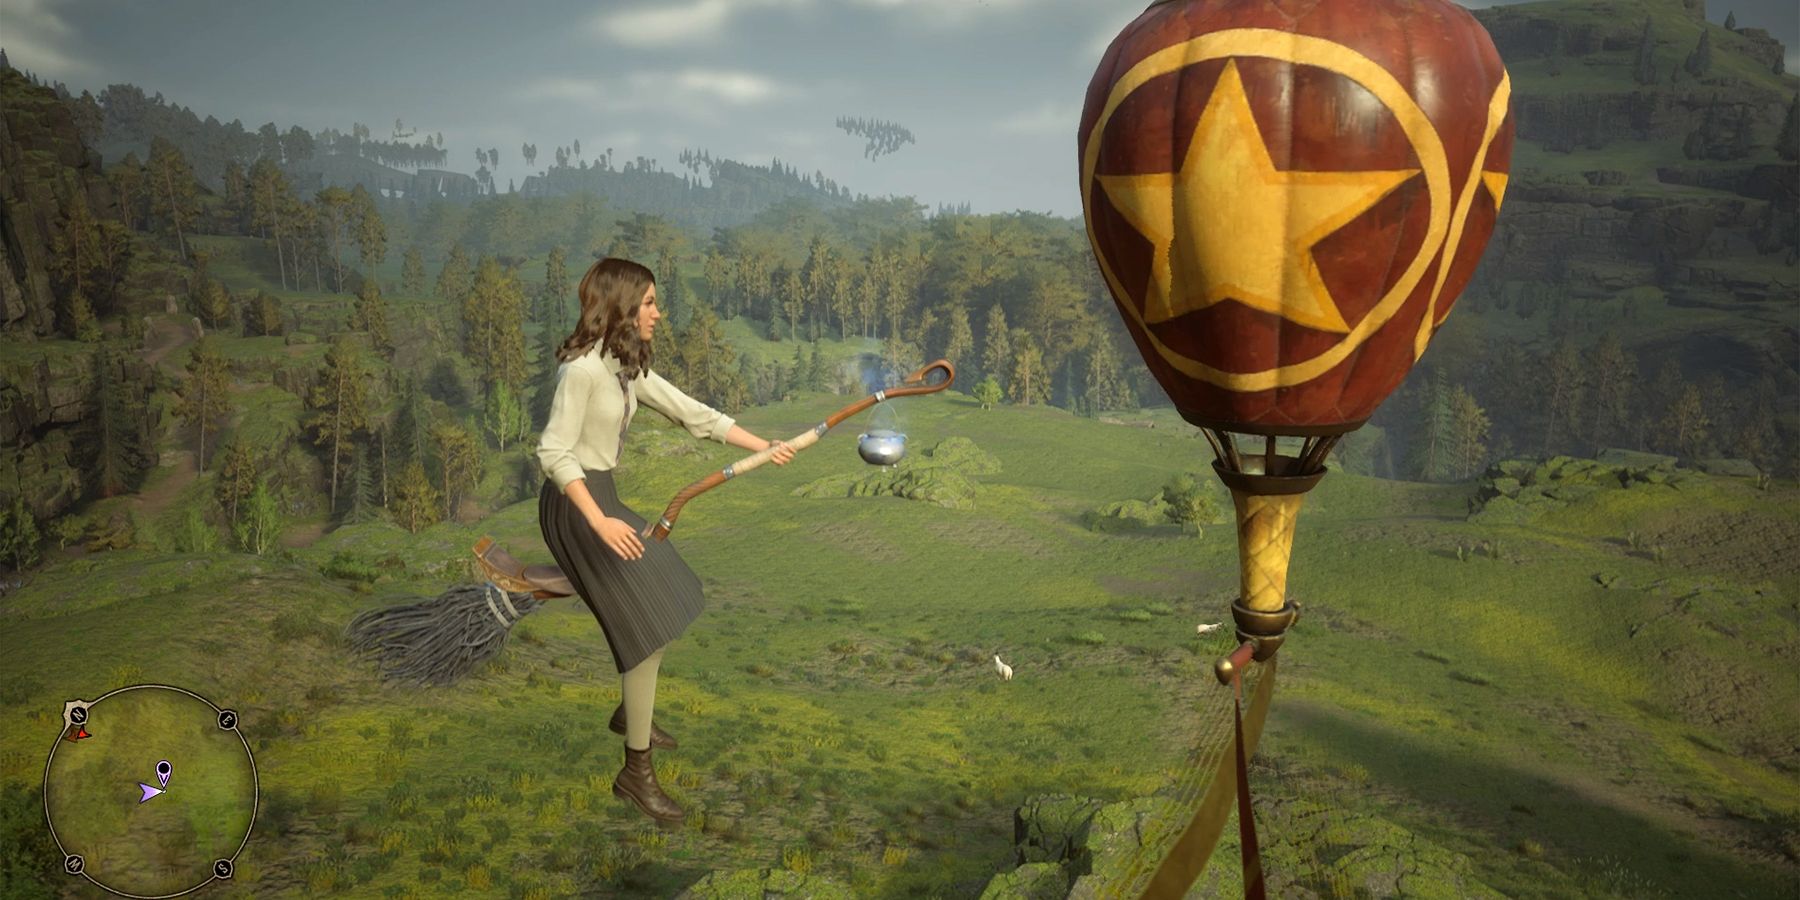 The Balloon Man - Harry Potter